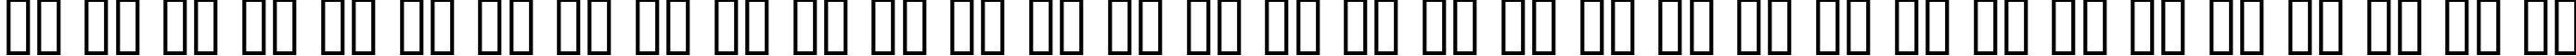 Пример написания русского алфавита шрифтом SKYfontmovies